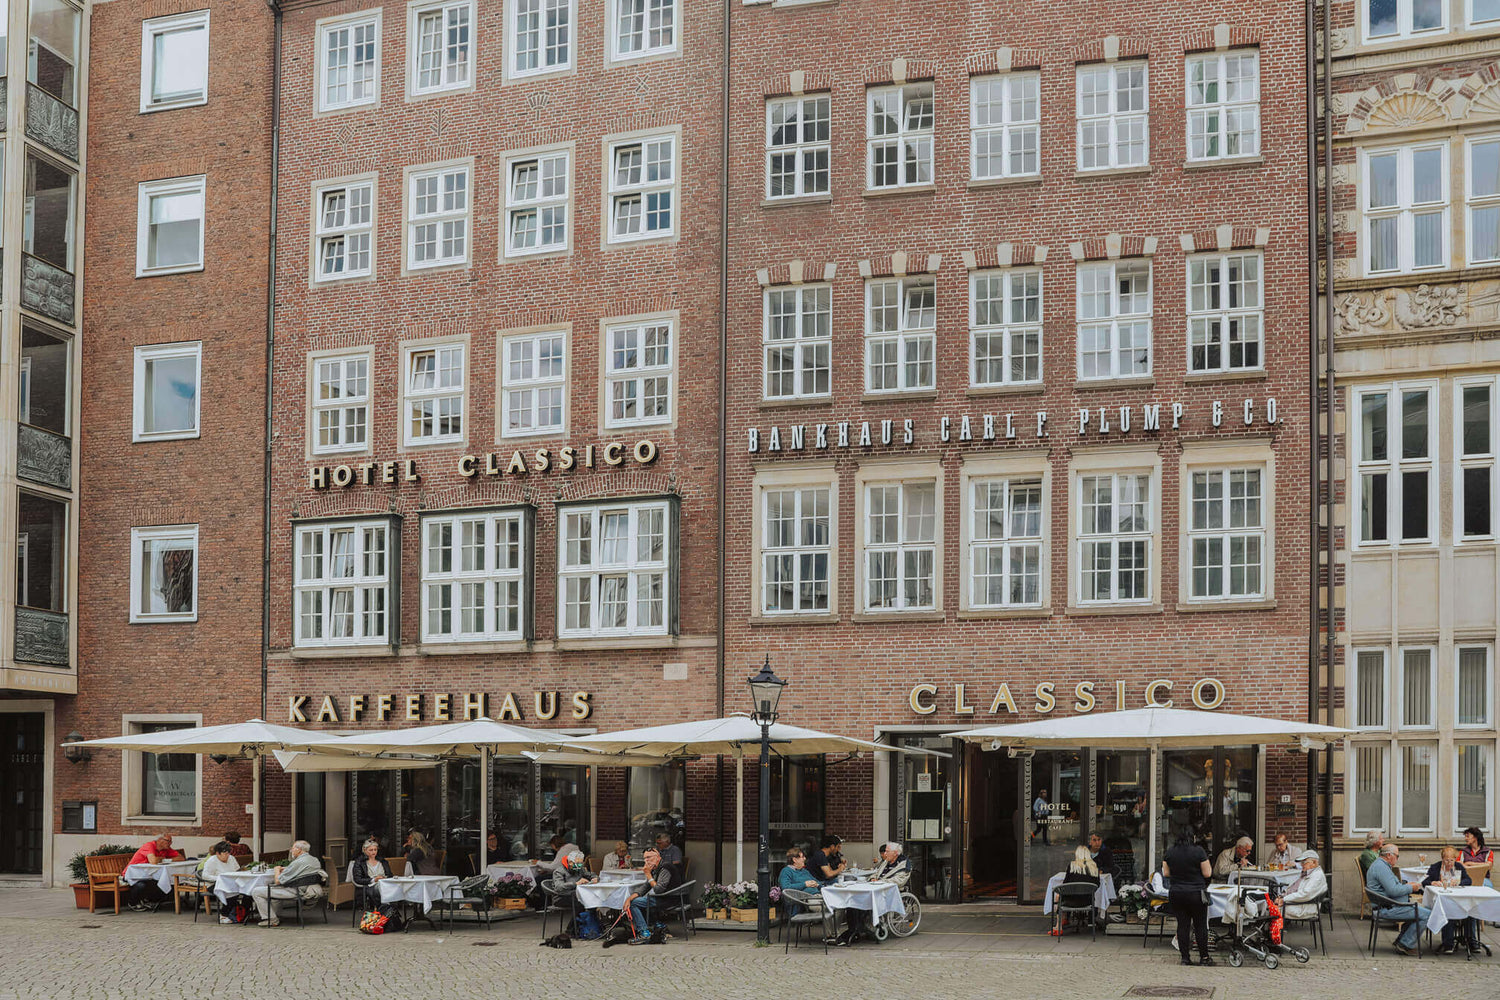 Kaffehaus Classico - Bremen Image Video